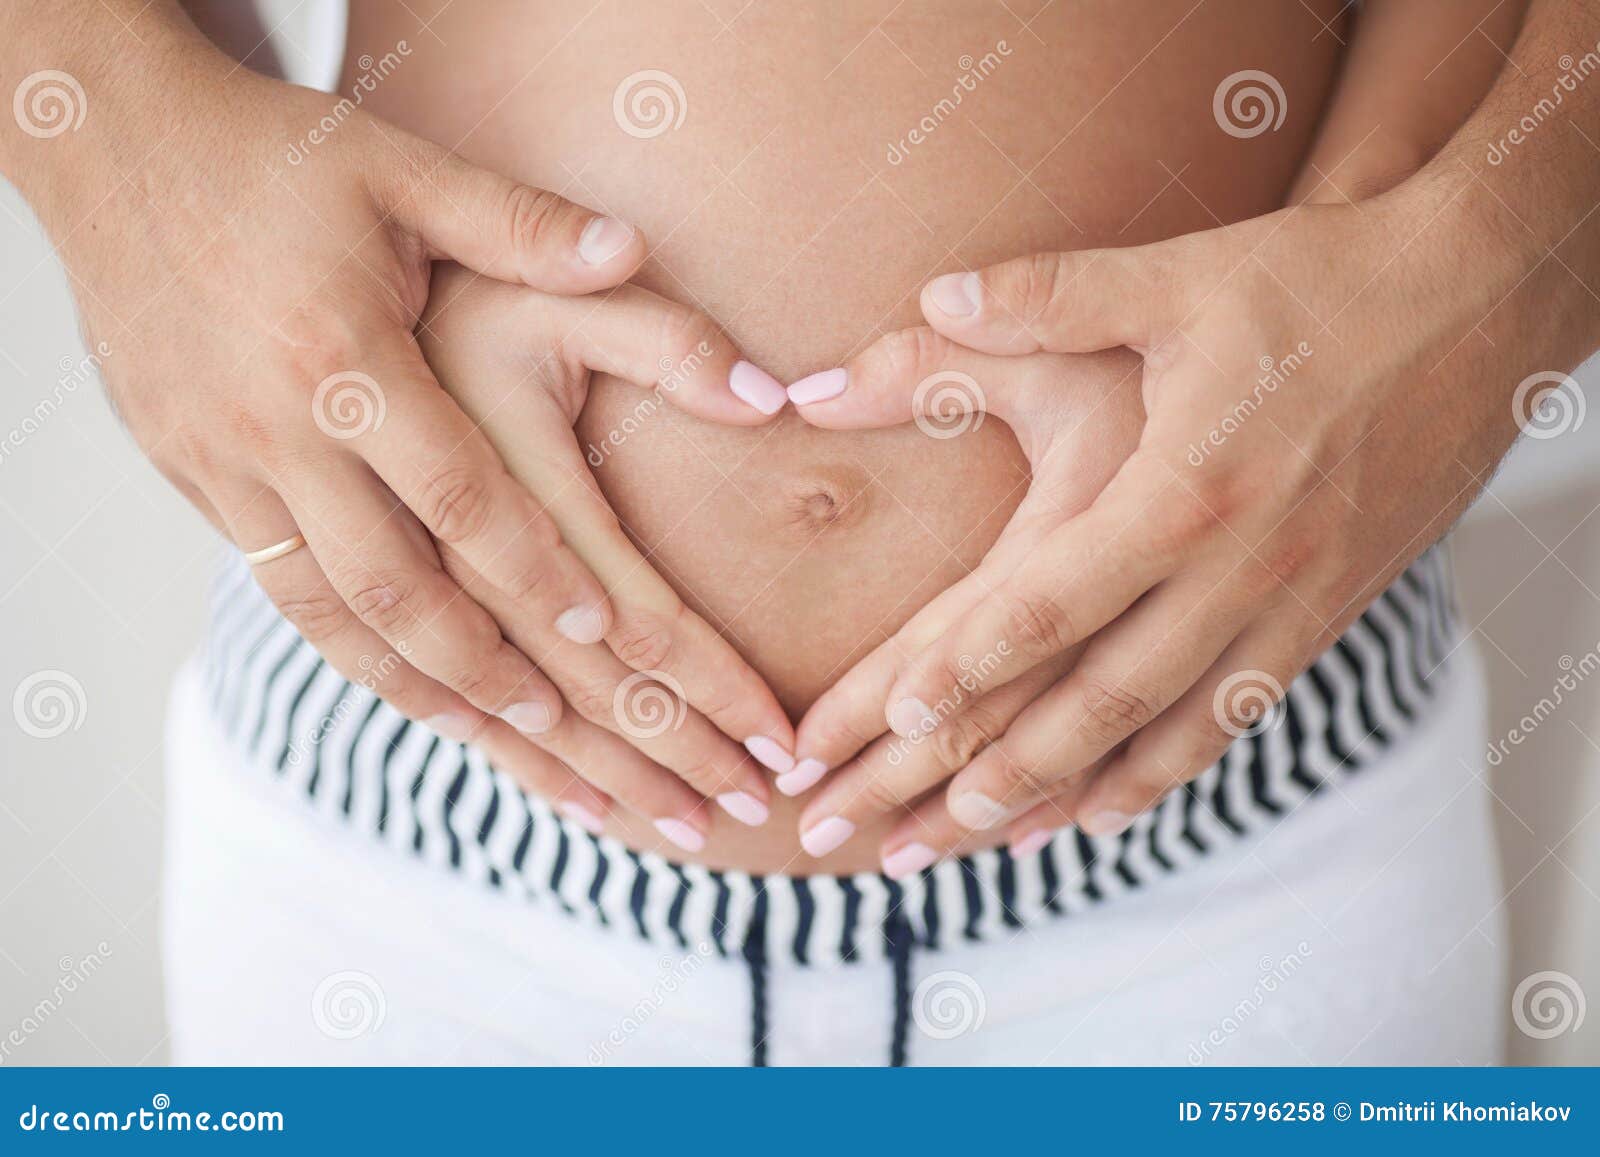 Можно забеременеть от руки. Руки на беременном животе. Руки на животе. Сердечко на животике беременной.